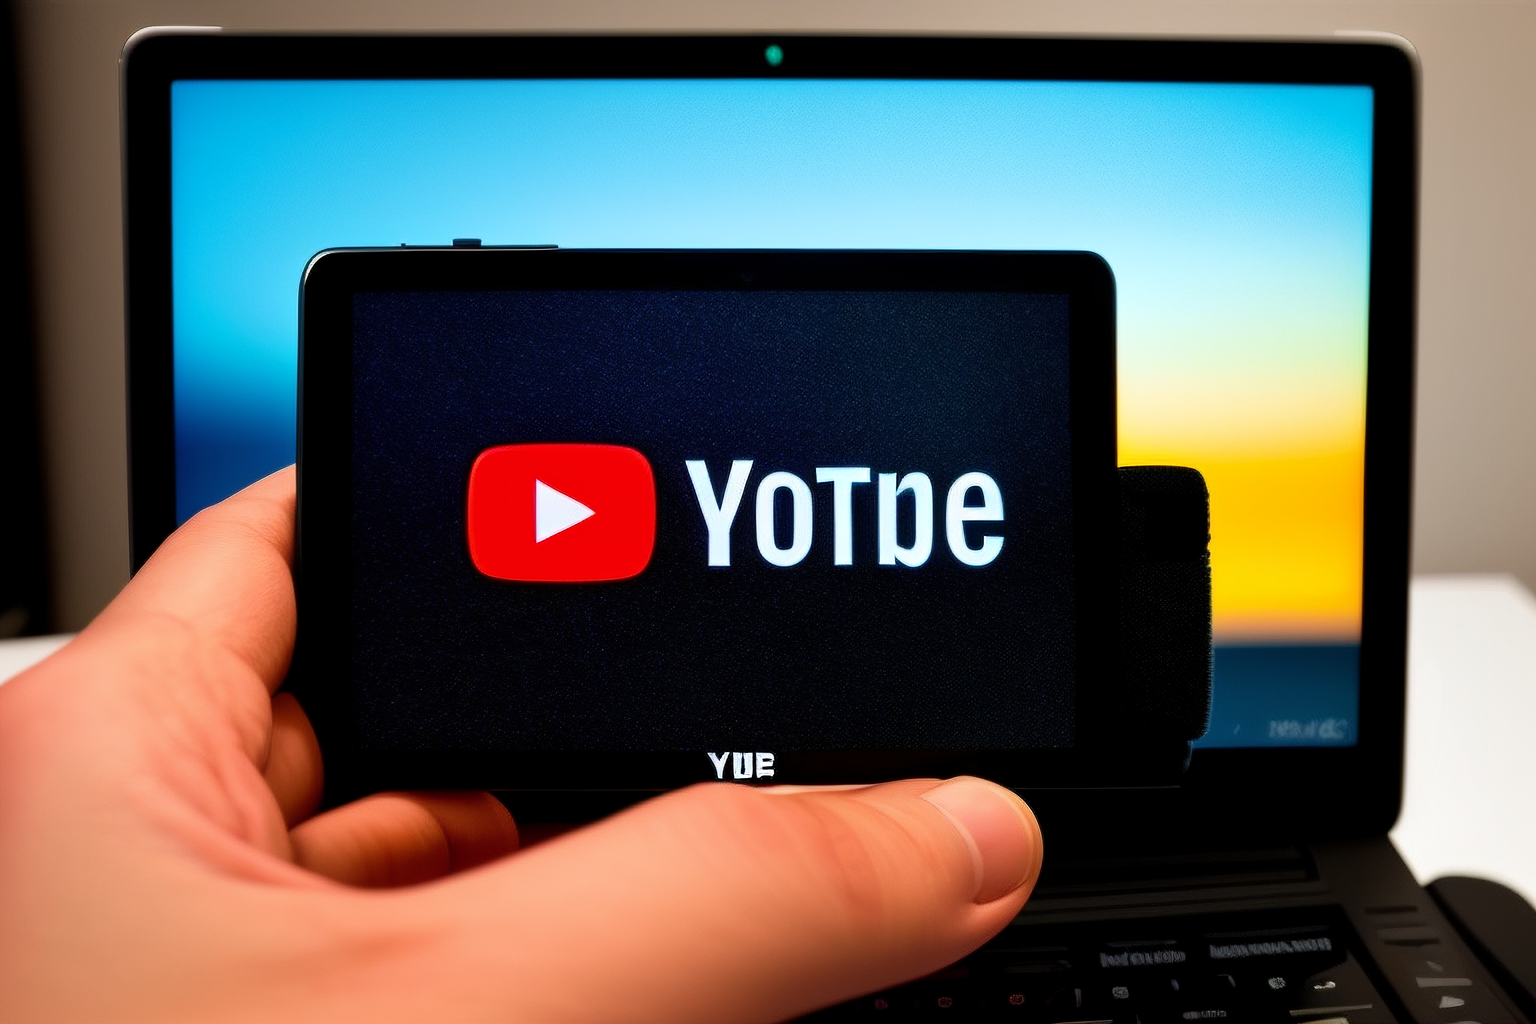 Video Dönüştürme Aracı: YouTube Videolarını Hızlıca Dönüştürün!